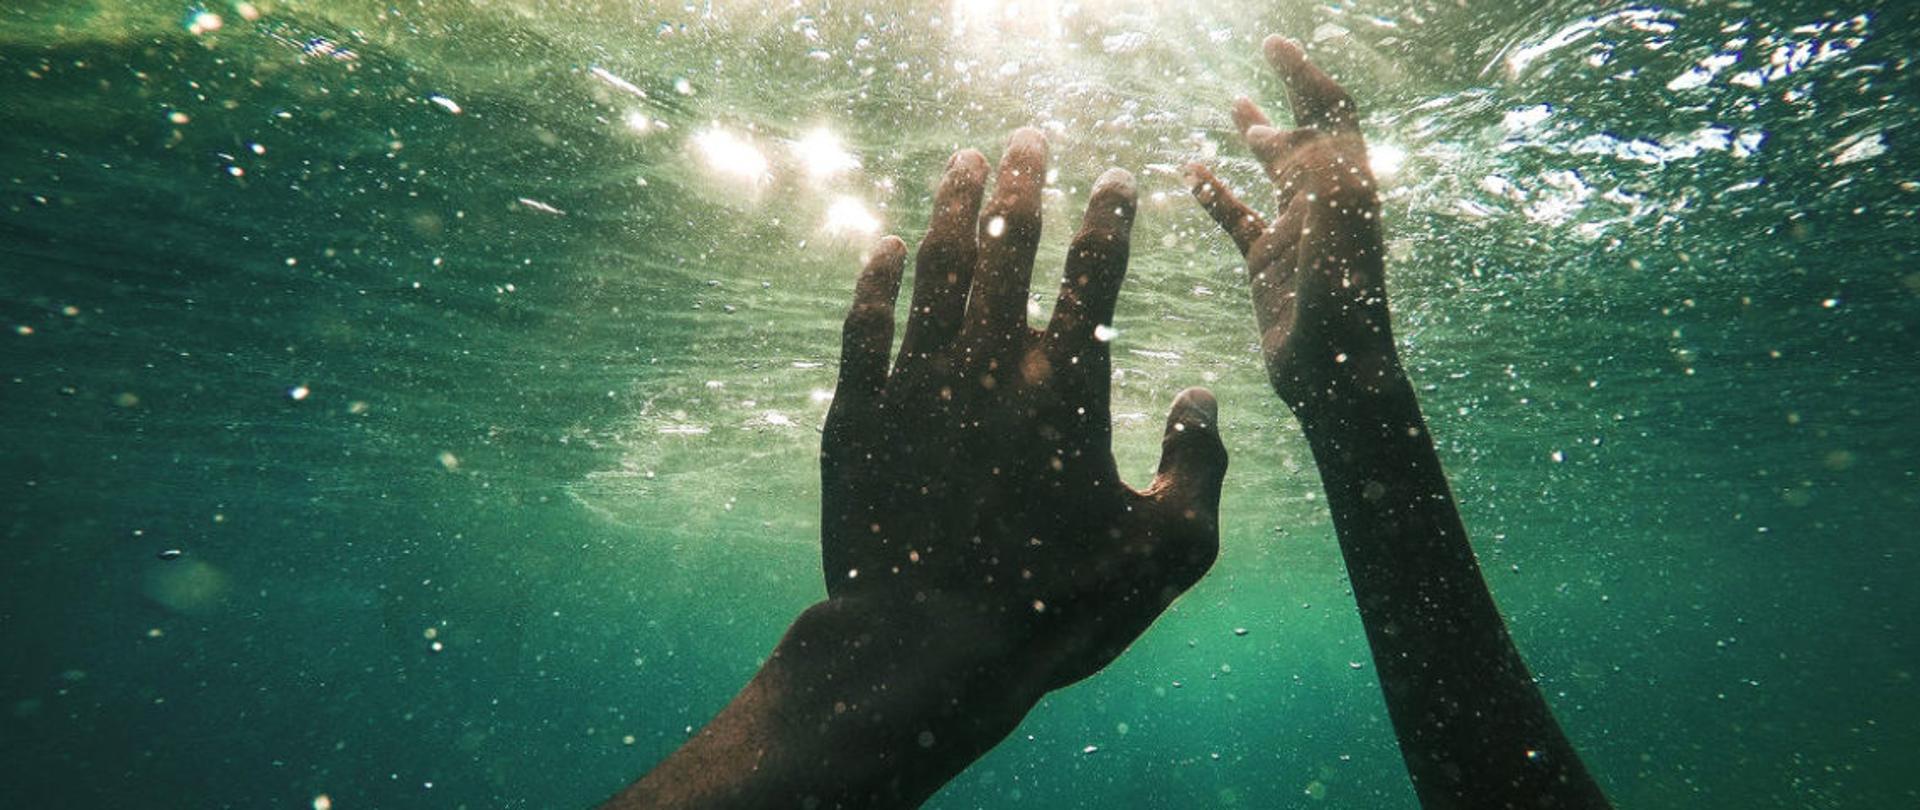 Zdjęcie dłoni w wodzie osobo tonącej.